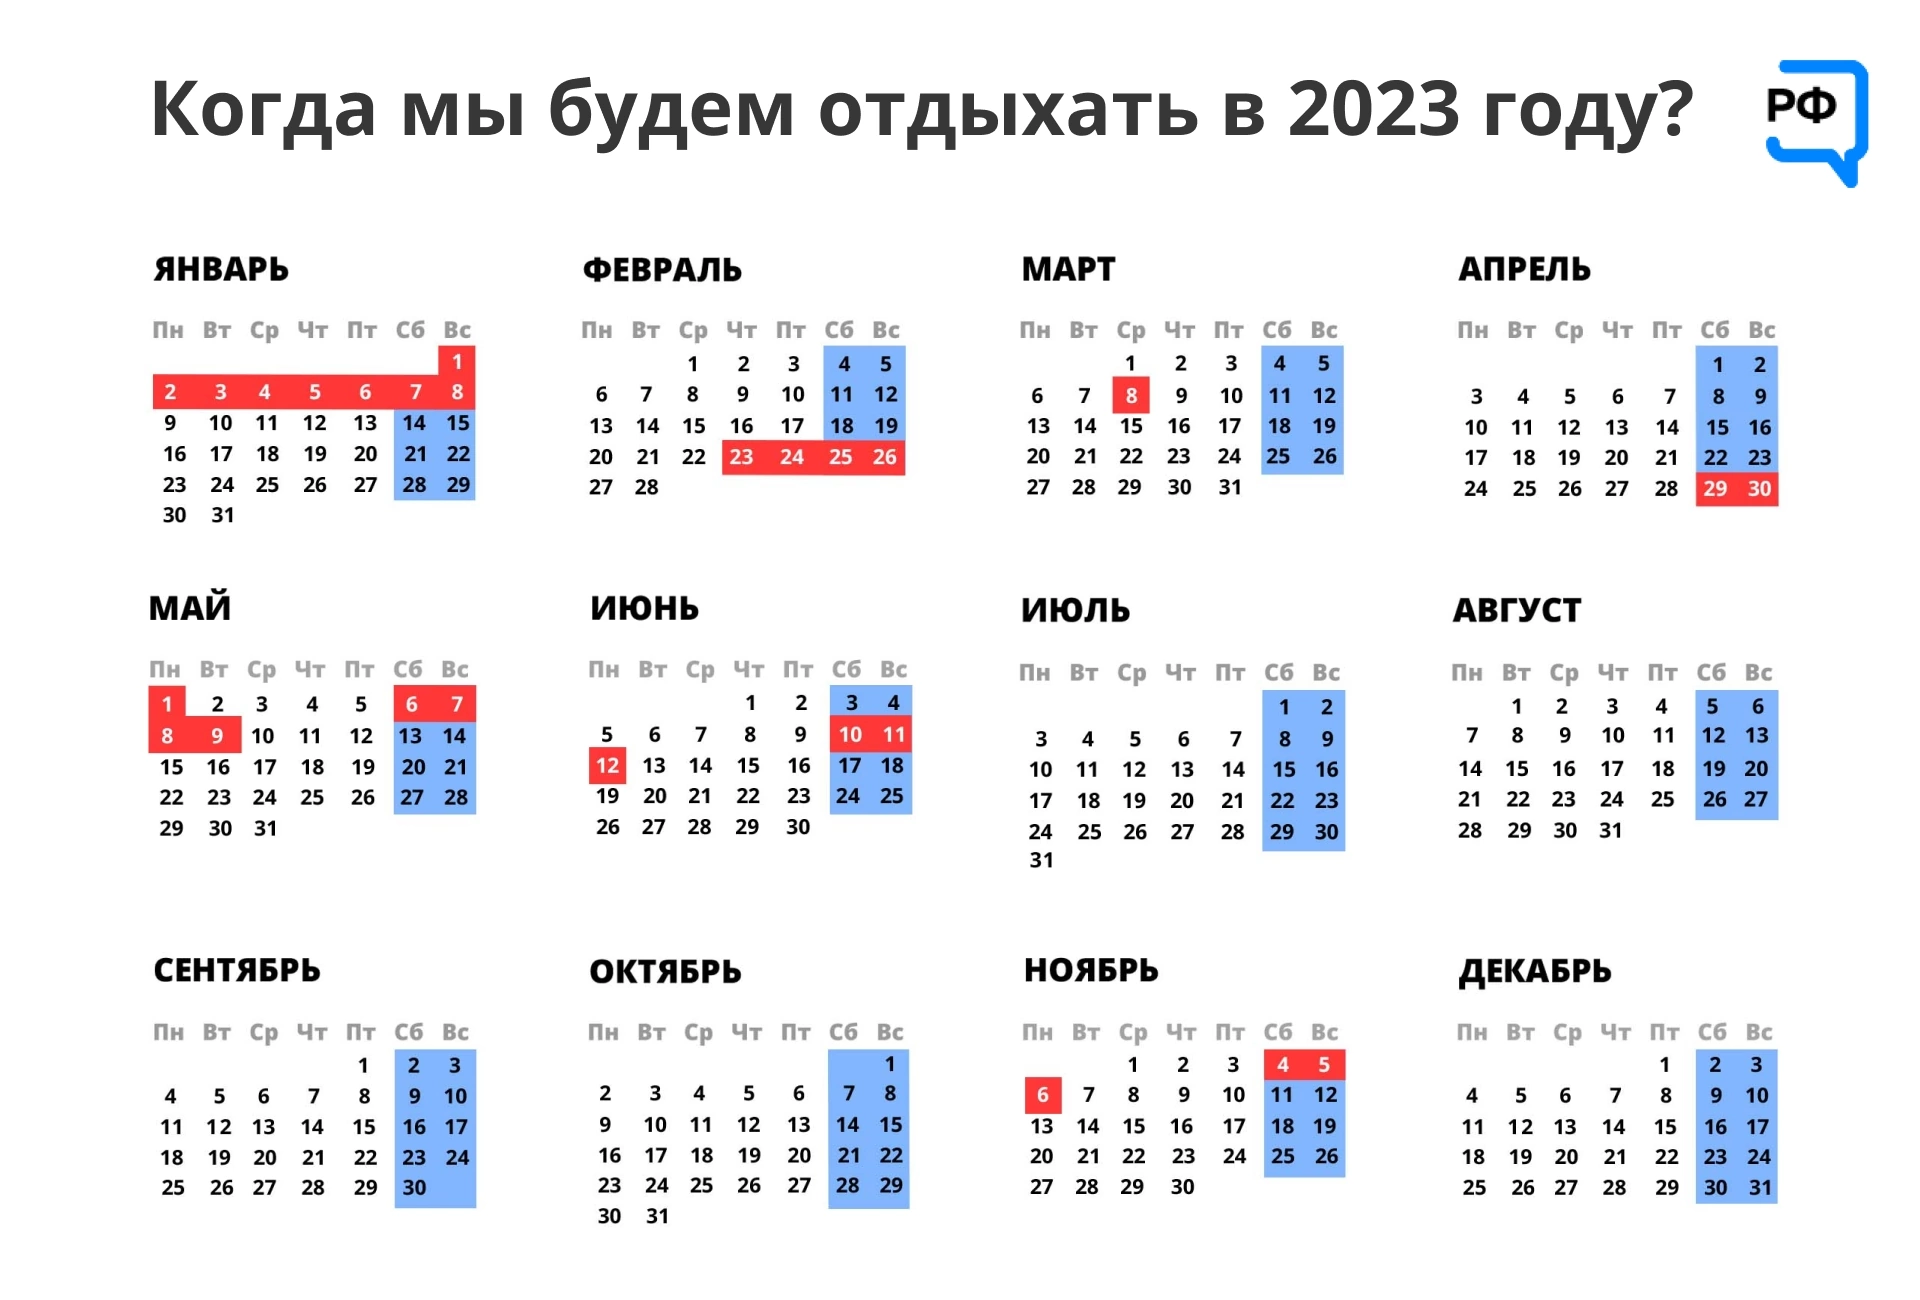 Рабочий день месяца января. Выходные и праздничные дни в феврале 2023 года в России. Календарь на 2023 год с праздниками. Календарные праздники на 2023 год. Календарь на 2023 год с праздниками и выходными.